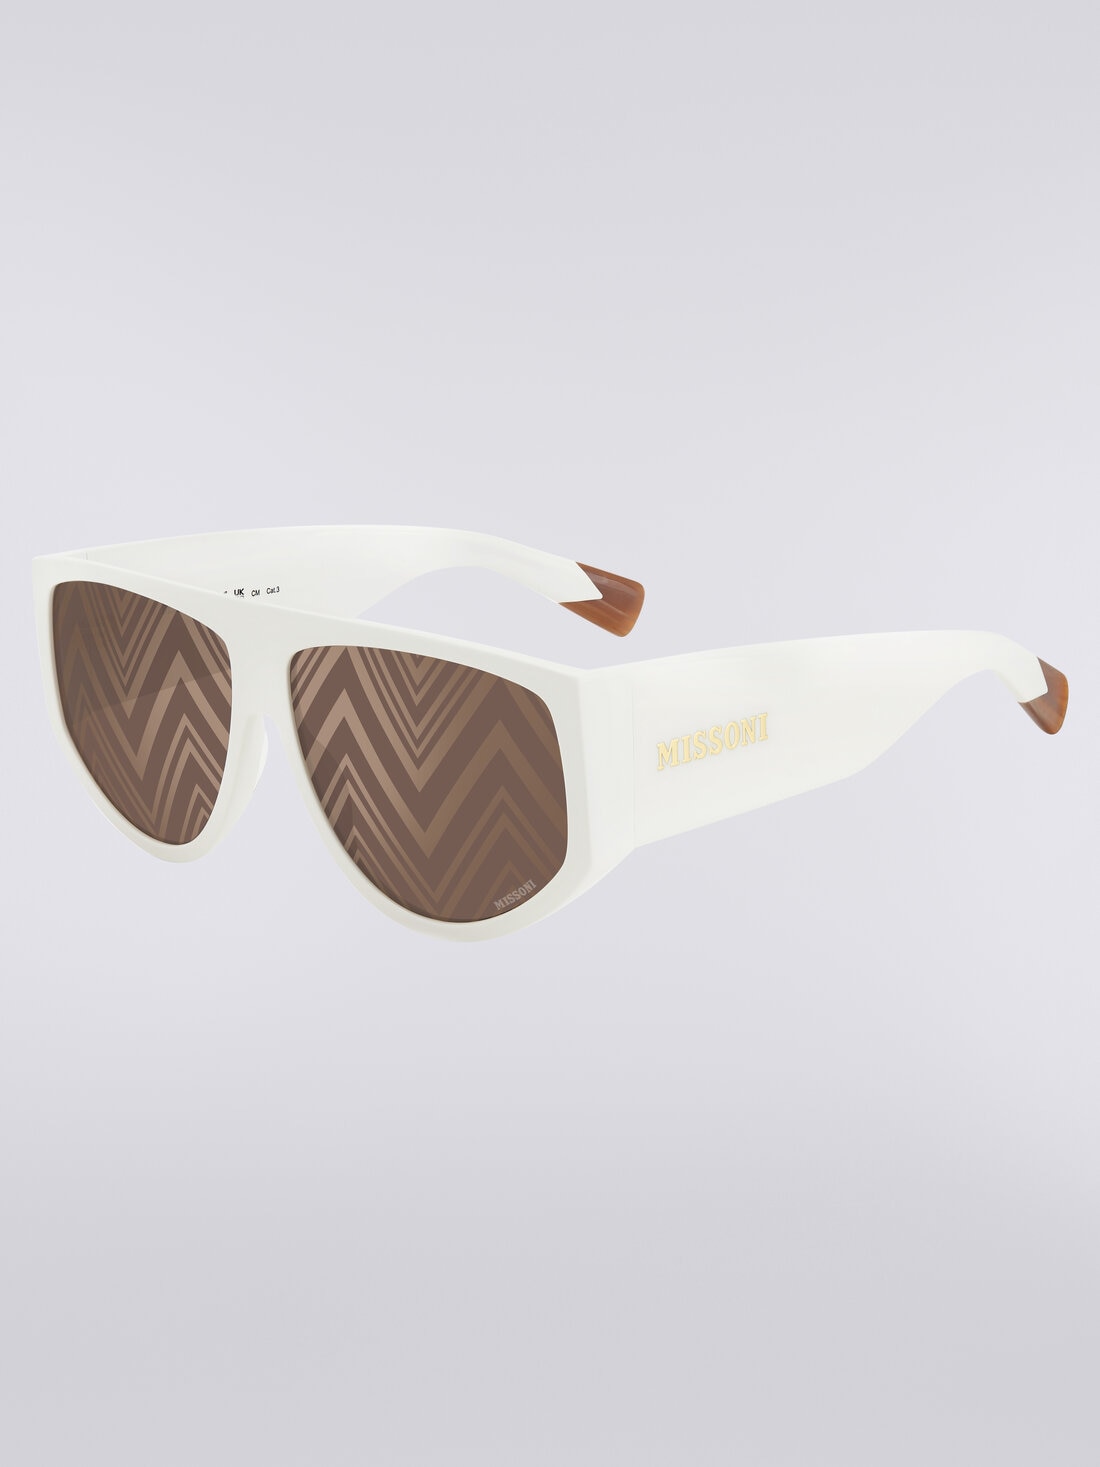 Sonnenbrille in Tropfenform mit übergroßen Bügeln, Mehrfarbig  - 8053147115474 - 1